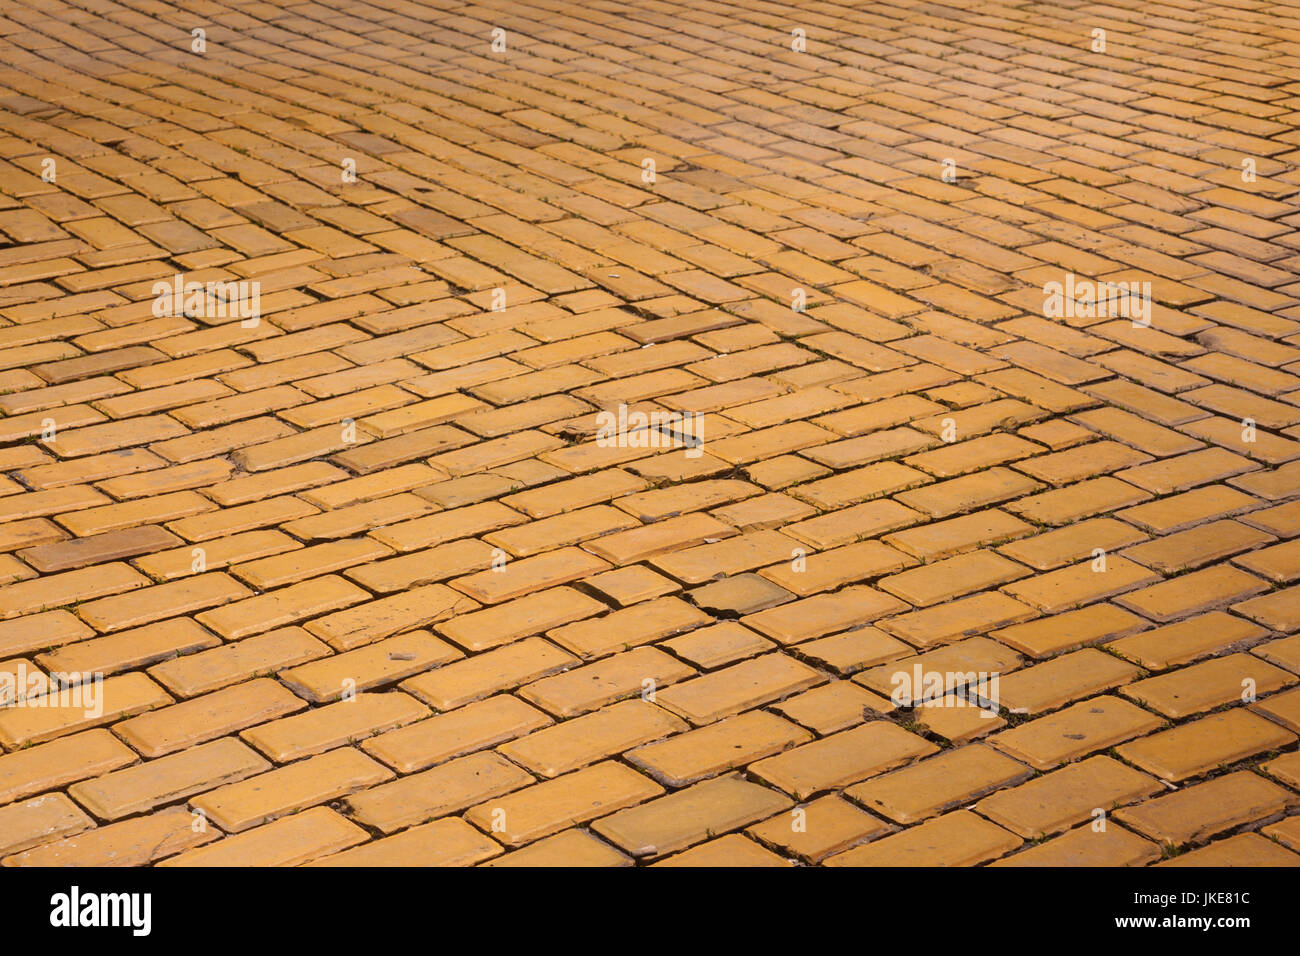 La Bulgaria, Sofia, Ploshtad Narodno Sabranie Square, Golden mattoni di pavimentazione strade del centro, realizzato da golden argilla, un mattone giallo Road Foto Stock